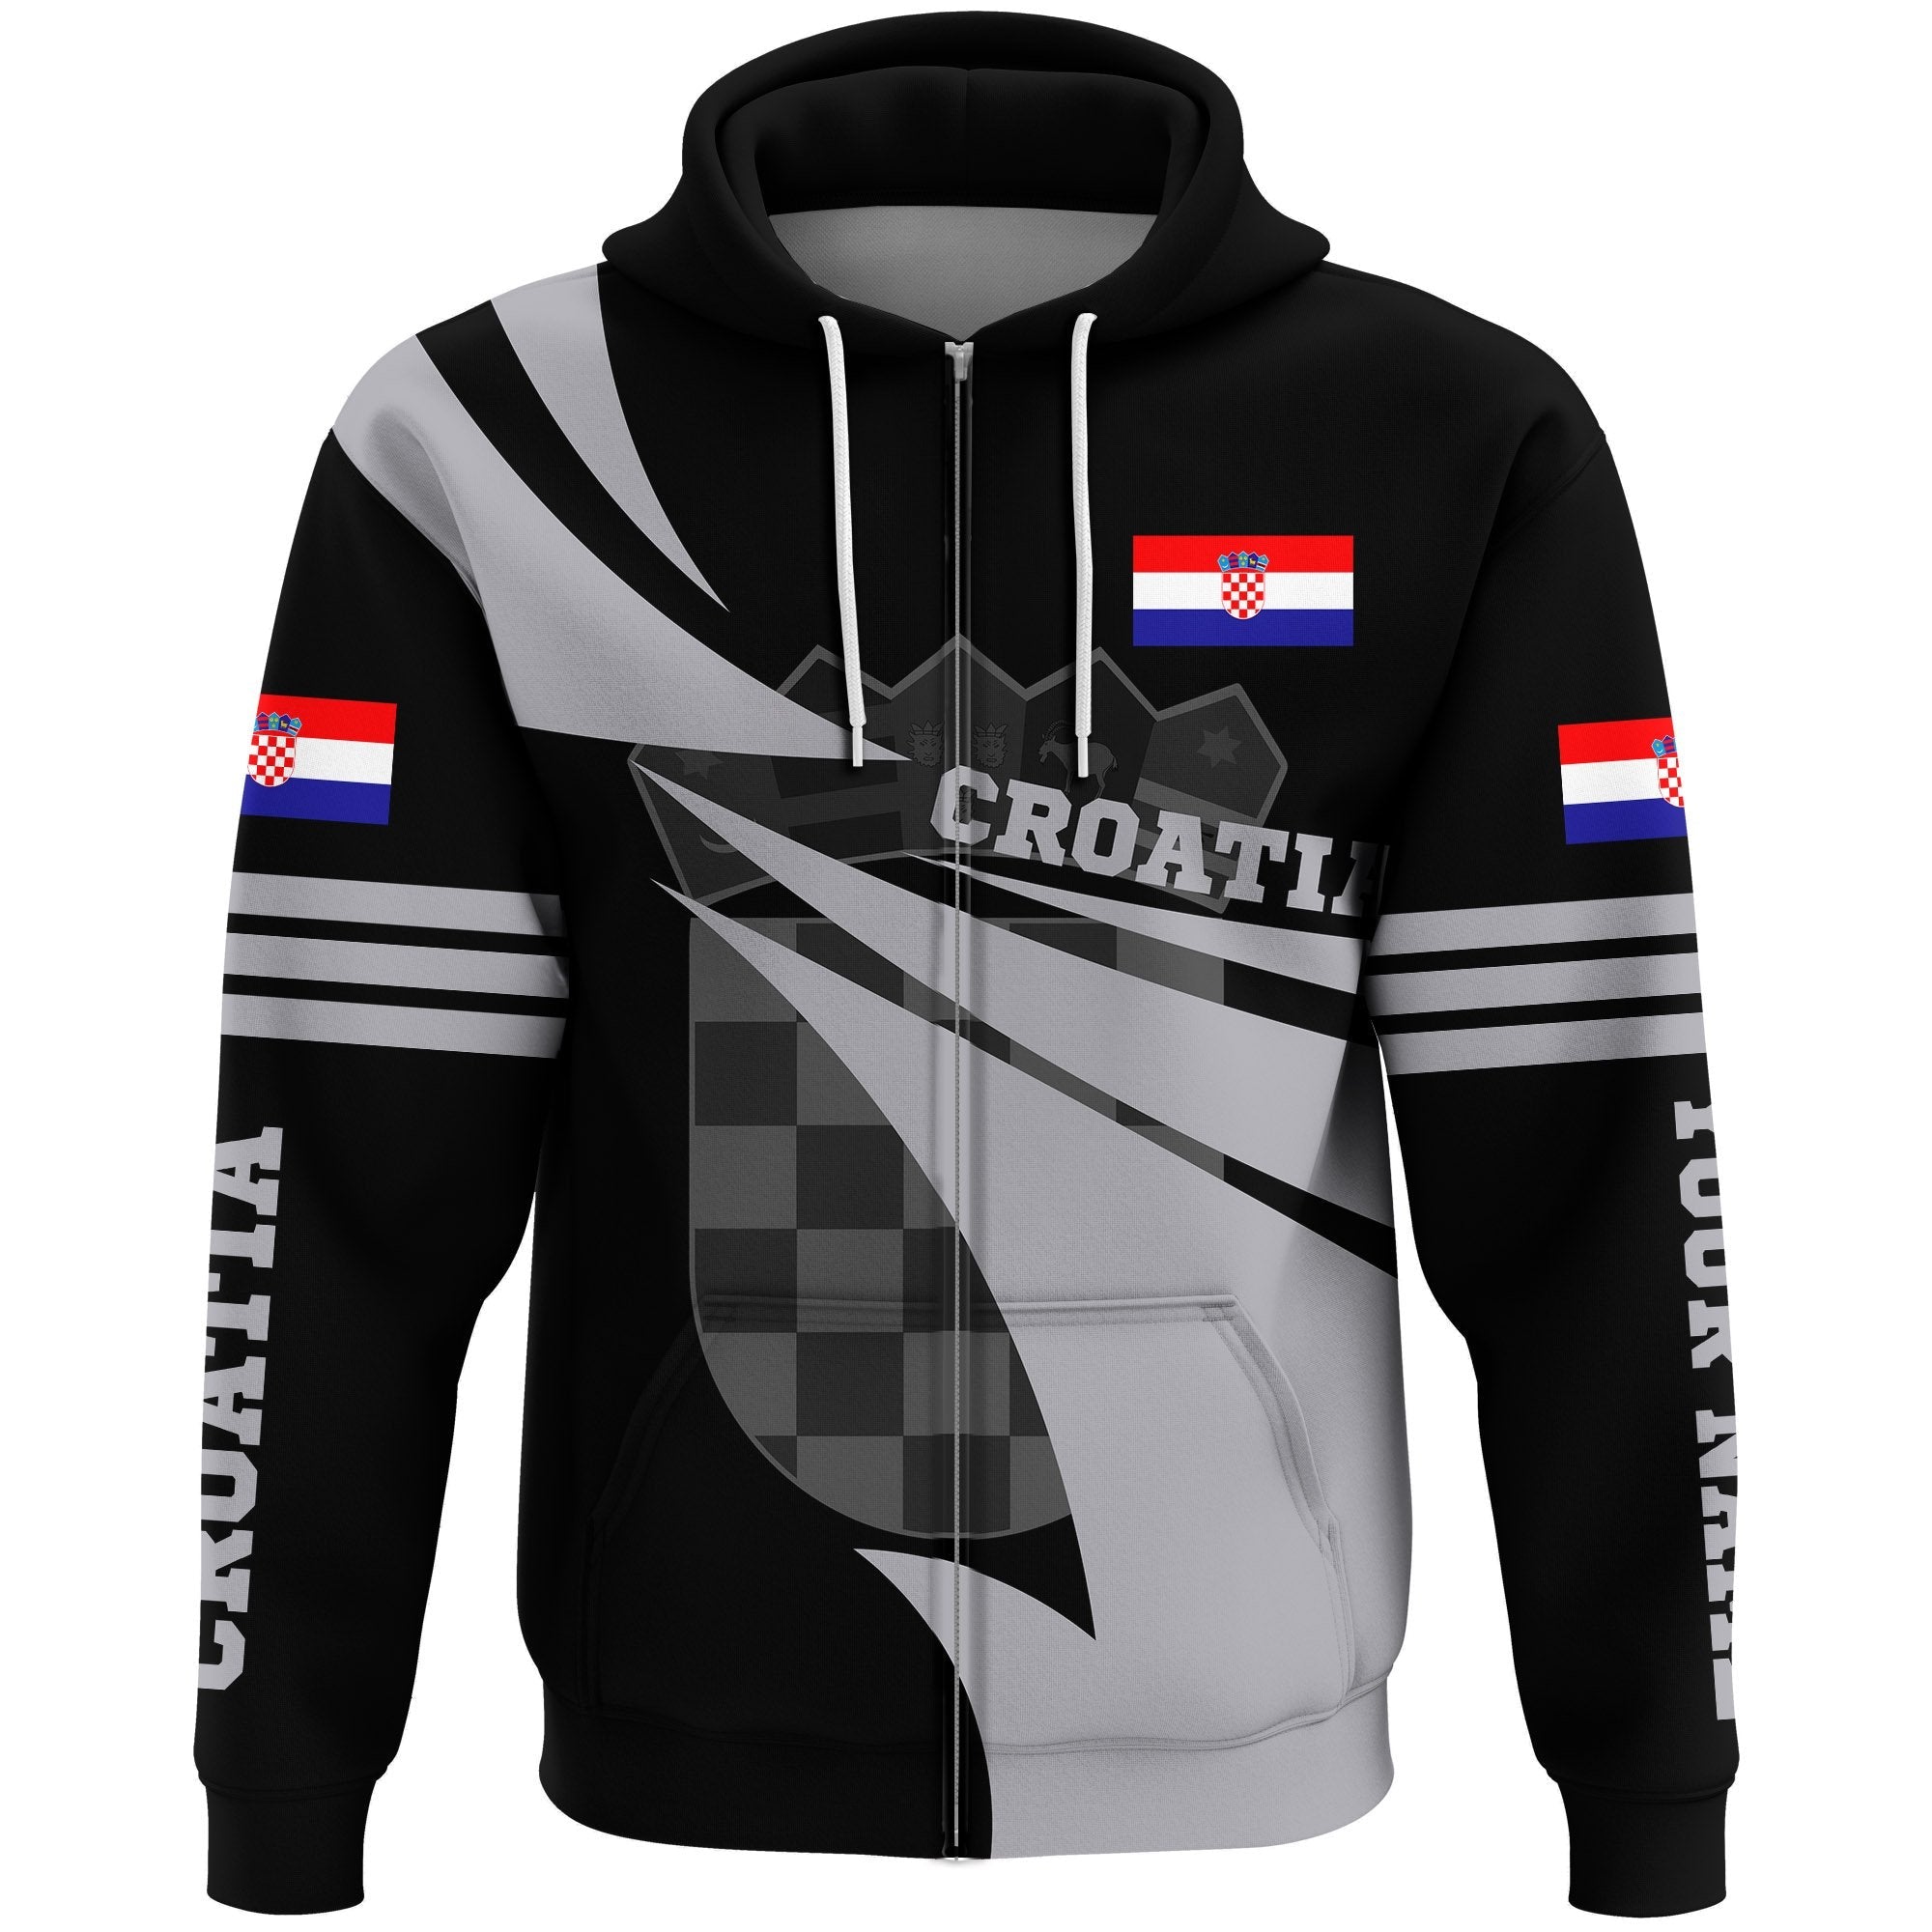 croatia-zip-hoodie-flag-jersey